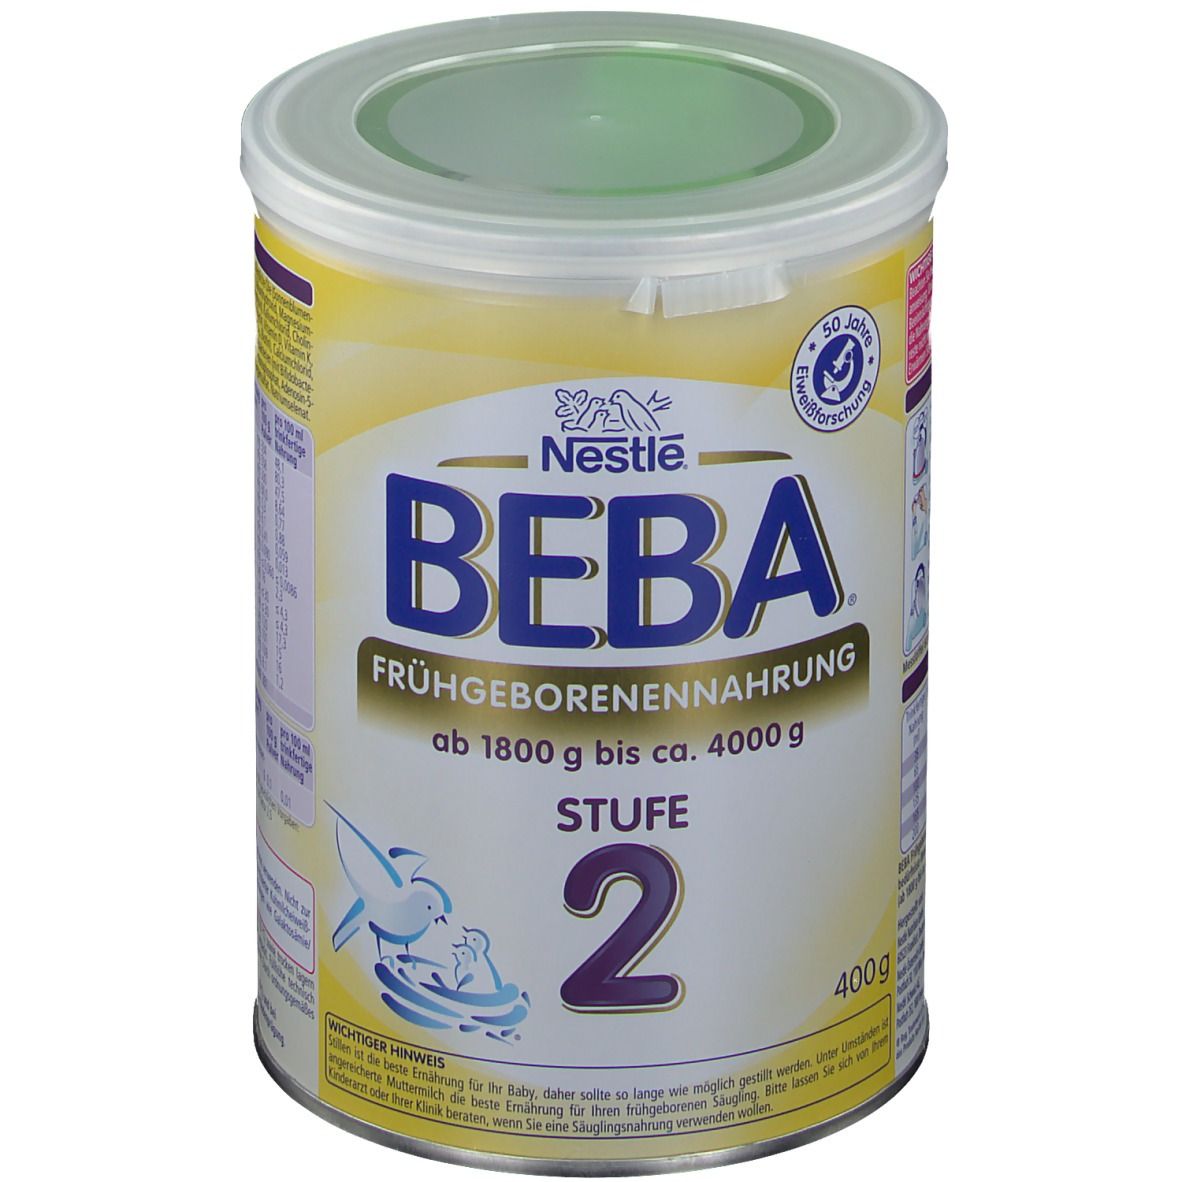 Nestlé BEBA® Frühgeborenennahrung Stufe 2